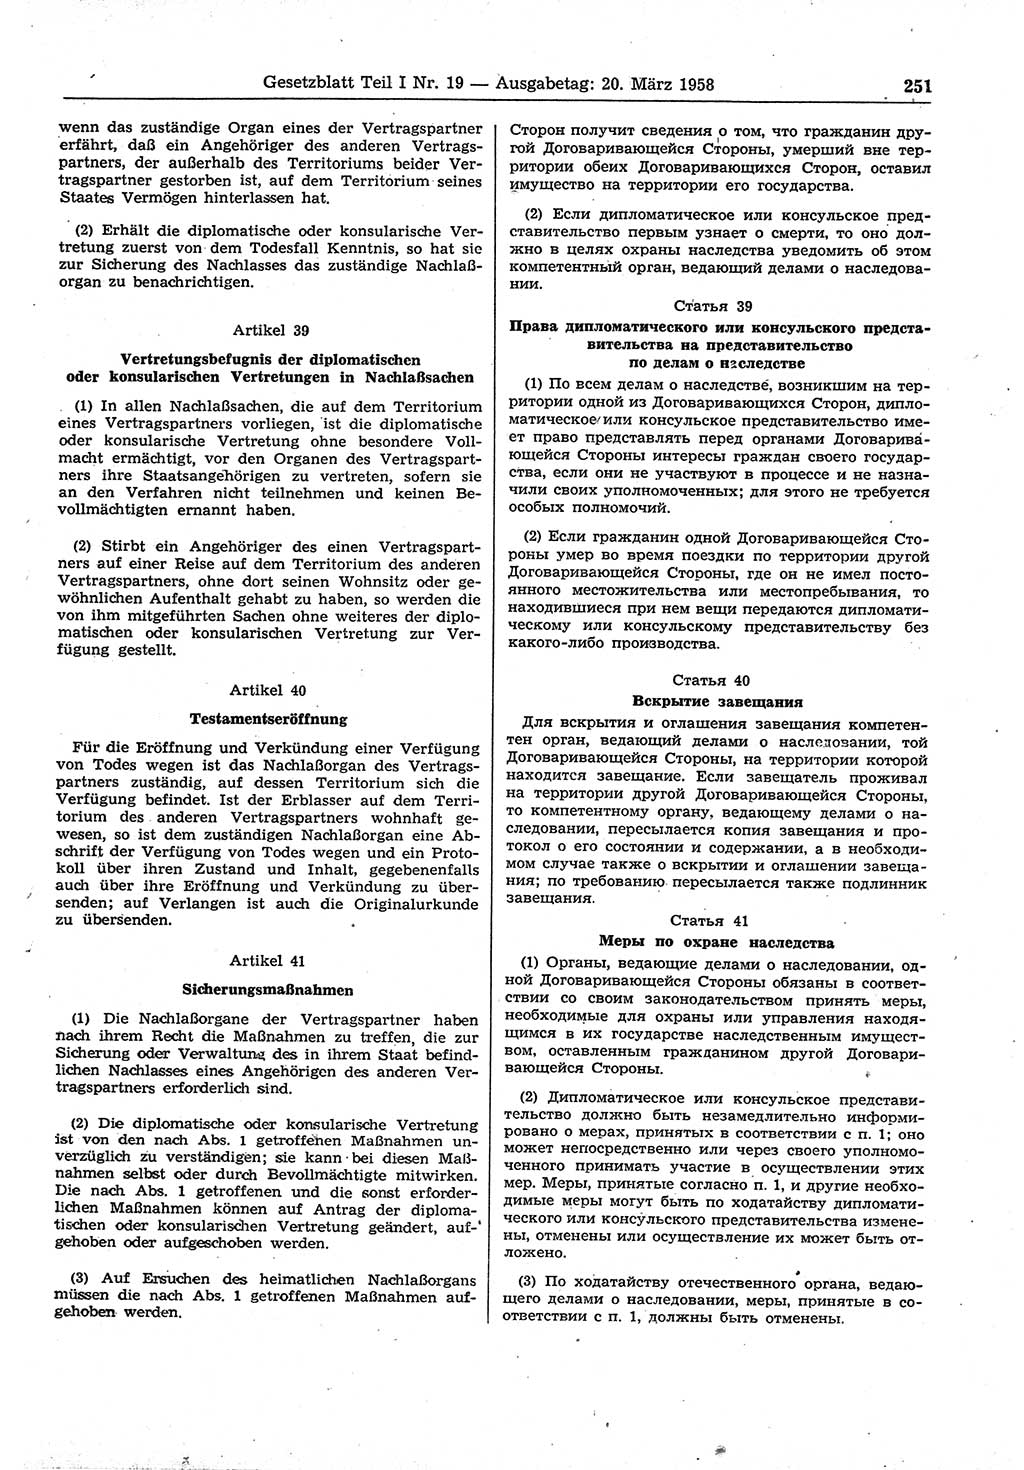 Gesetzblatt (GBl.) der Deutschen Demokratischen Republik (DDR) Teil Ⅰ 1958, Seite 251 (GBl. DDR Ⅰ 1958, S. 251)